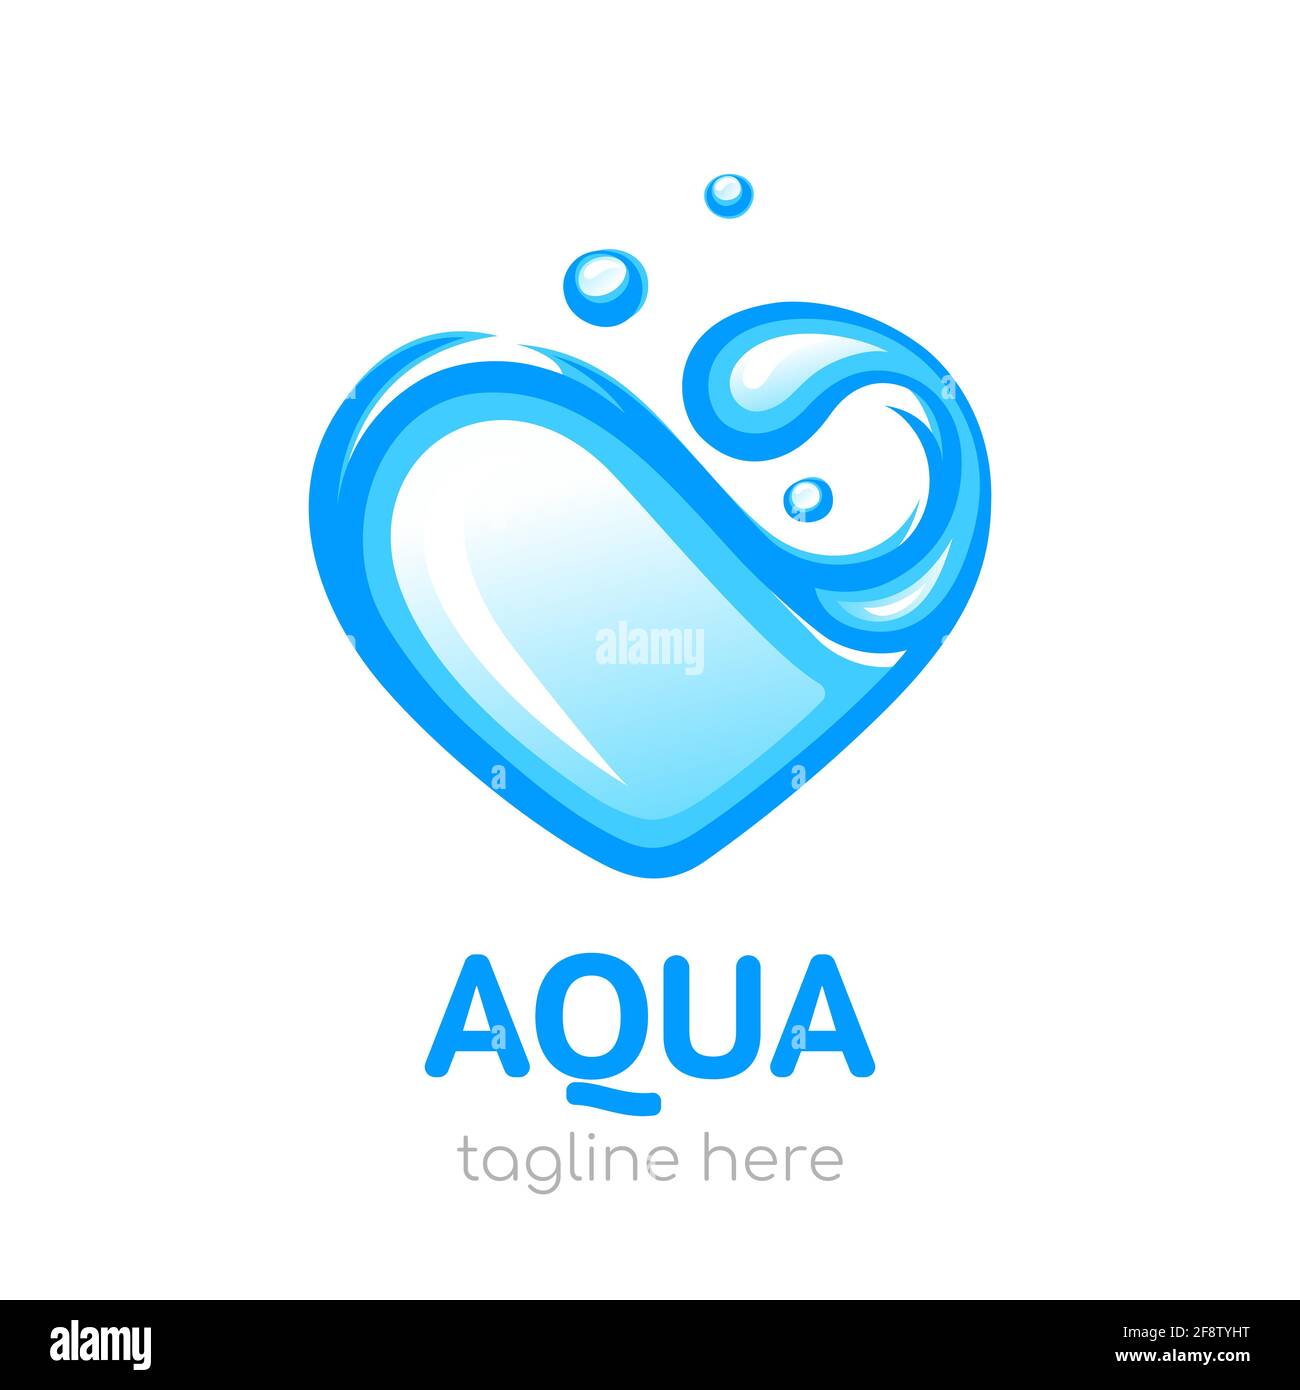 Acqua a forma di cuore. Logo Aqua. Concetto di progettazione di acqua pulita. Illustrazione vettoriale, isolata su sfondo bianco Illustrazione Vettoriale